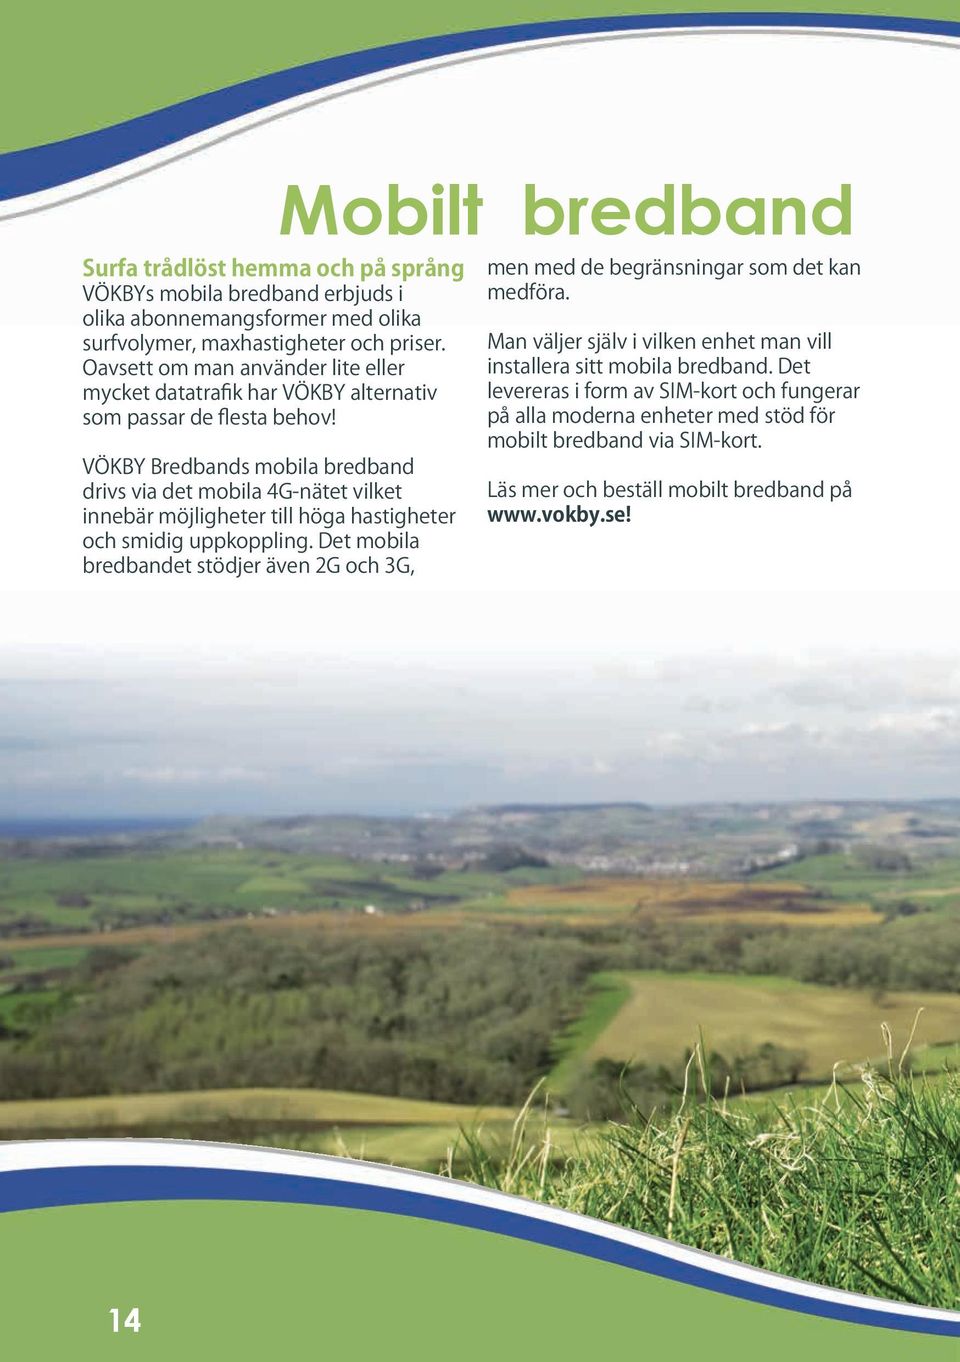 VÖKBY Bredbands mobila bredband drivs via det mobila 4G-nätet vilket innebär möjligheter till höga hastigheter och smidig uppkoppling.